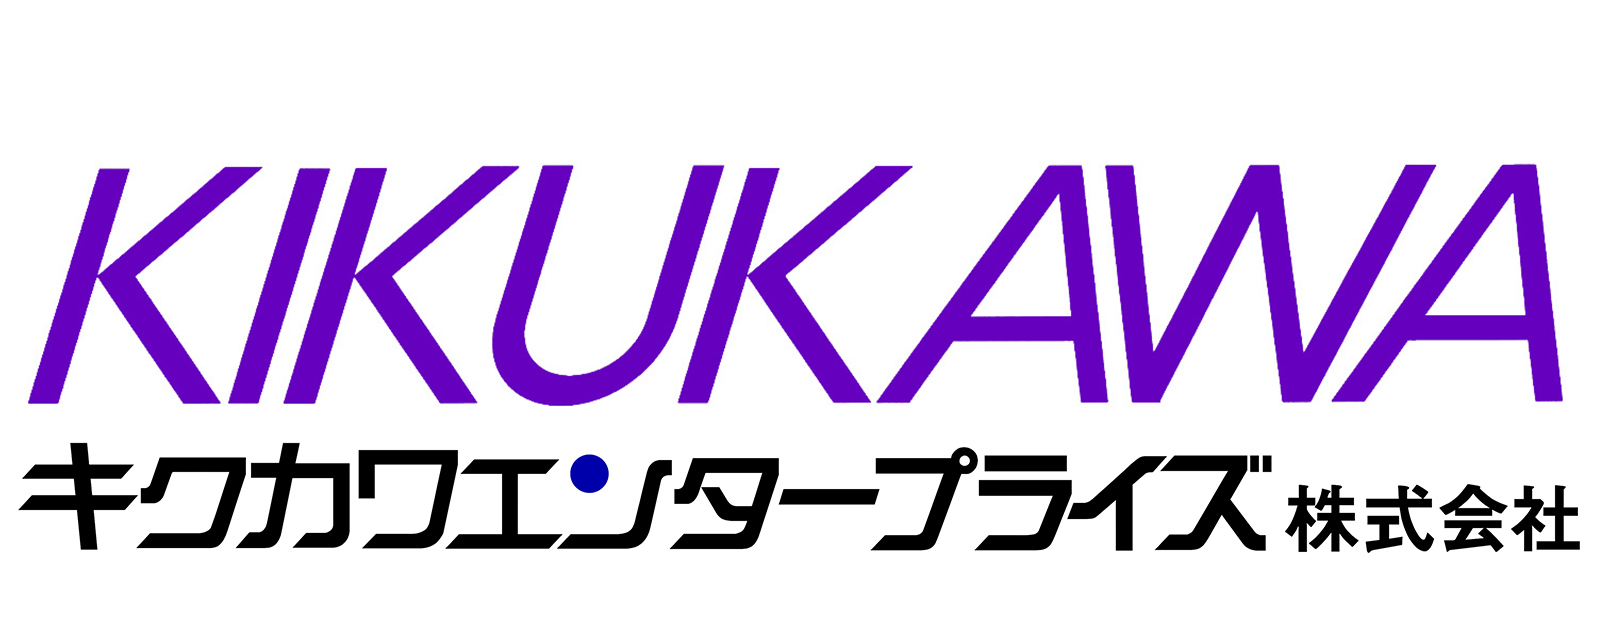 キクカワエンタープライズ株式会社 KIKUKAWA ENTERPRISE, INC.